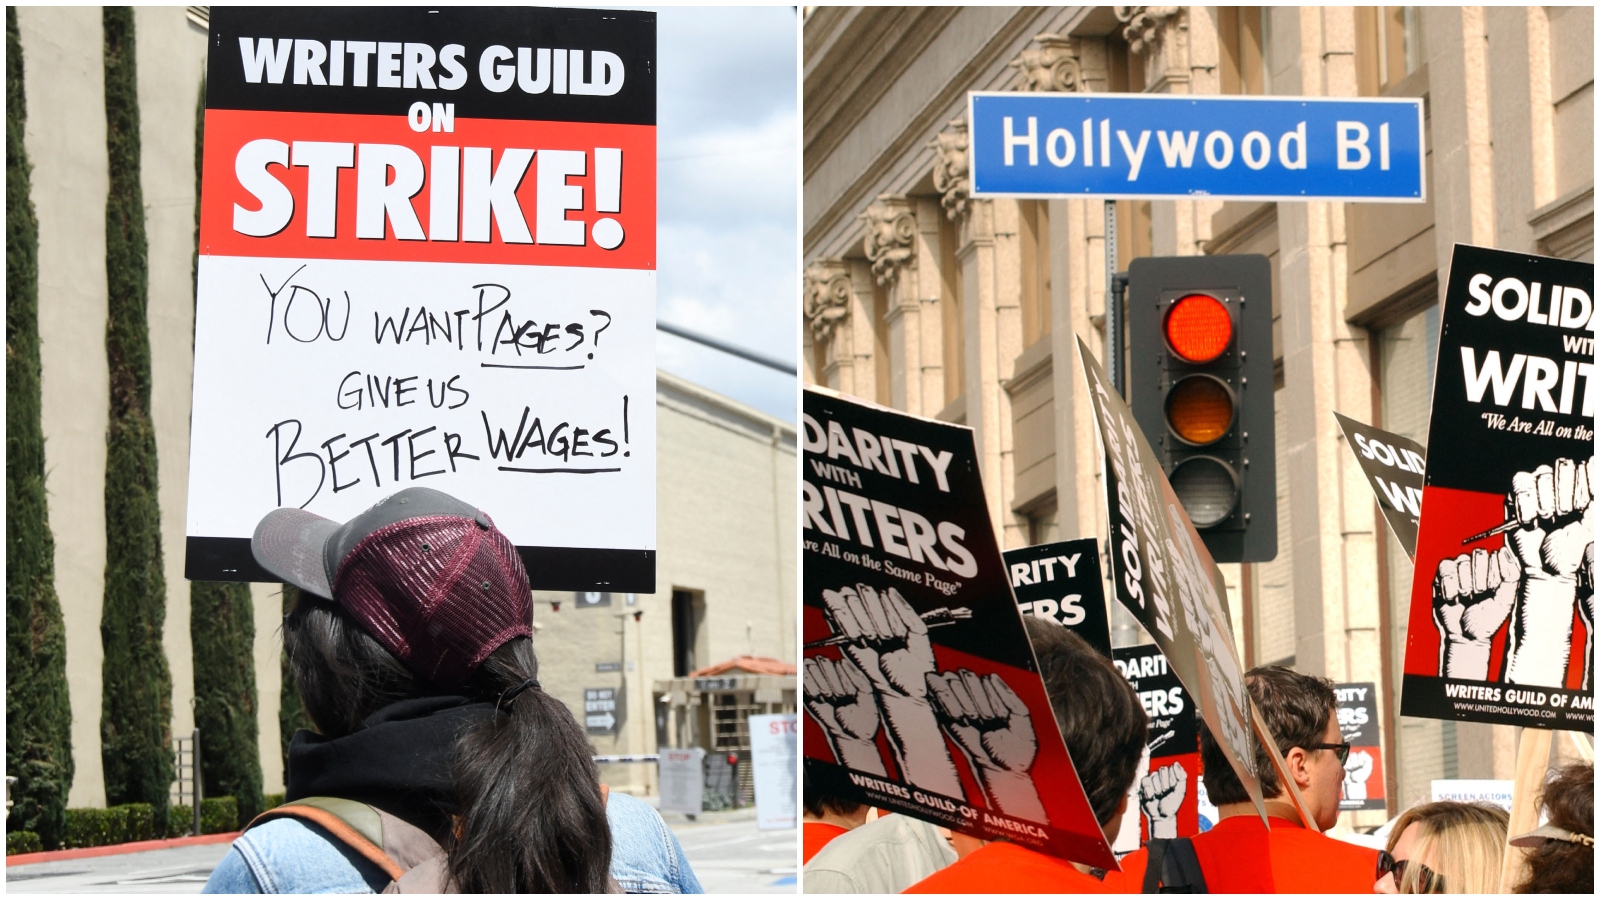 Gotov je štrajk u Hollywoodu. Znači li to i povratak omiljenih serija?